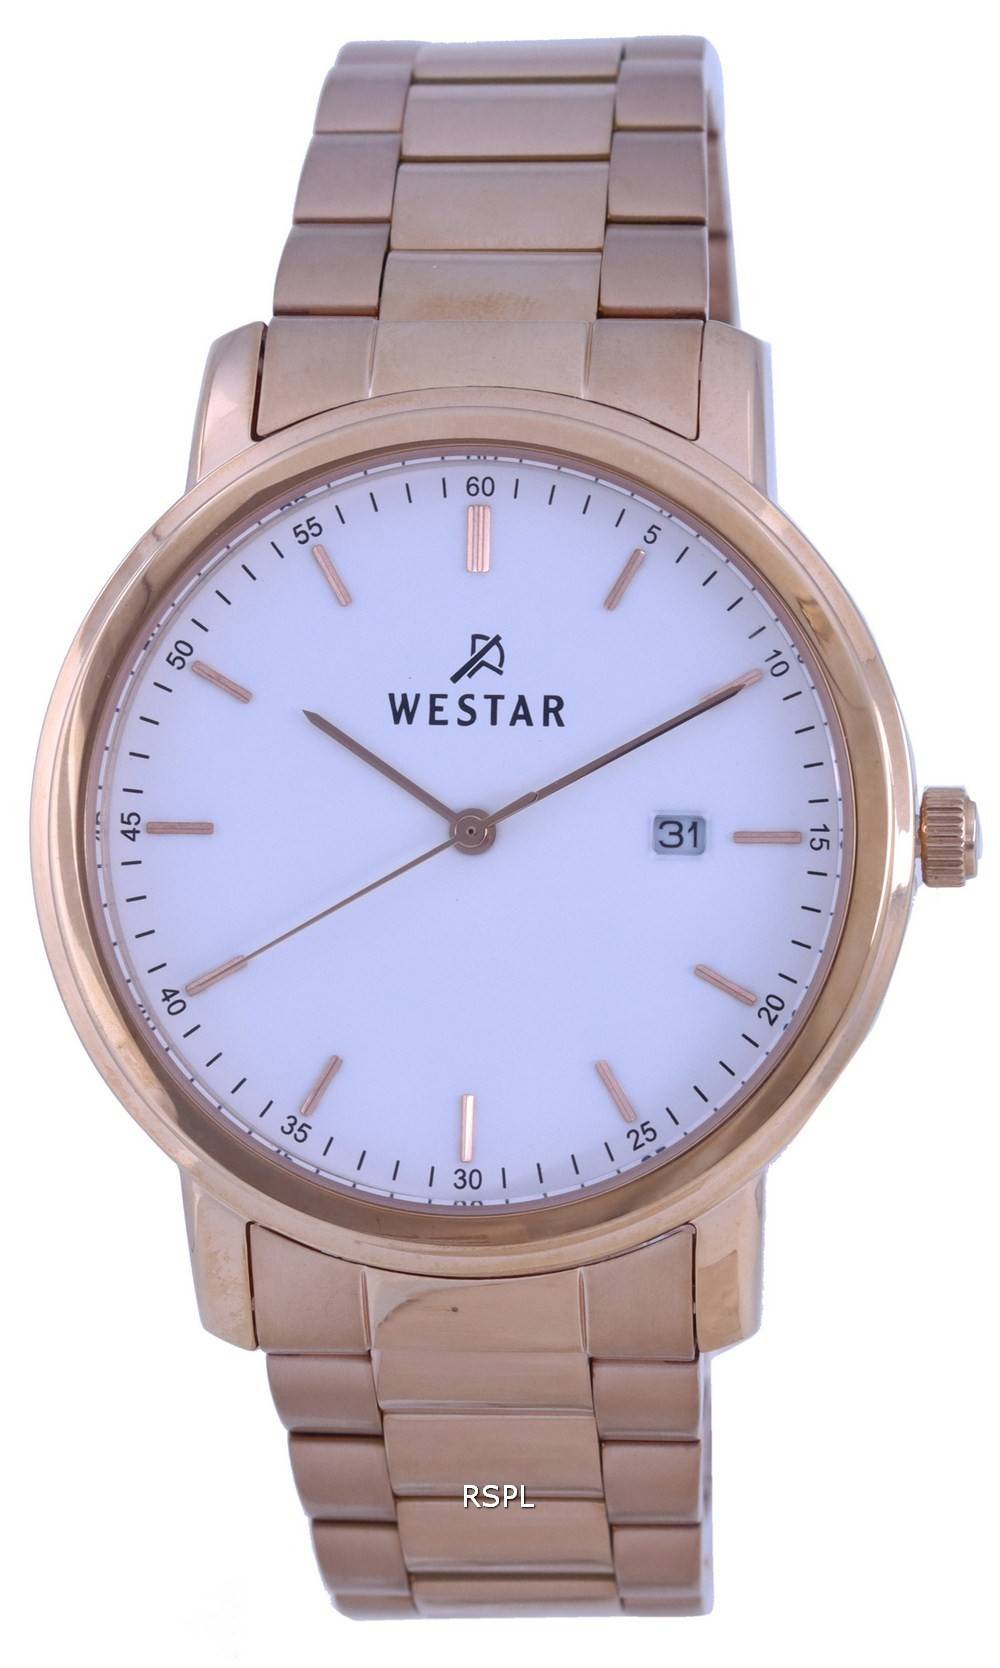 Westar 화이트 다이얼 로즈 골드 톤 스테인레스 스틸 쿼츠 50243 PPN 601 남성용 시계